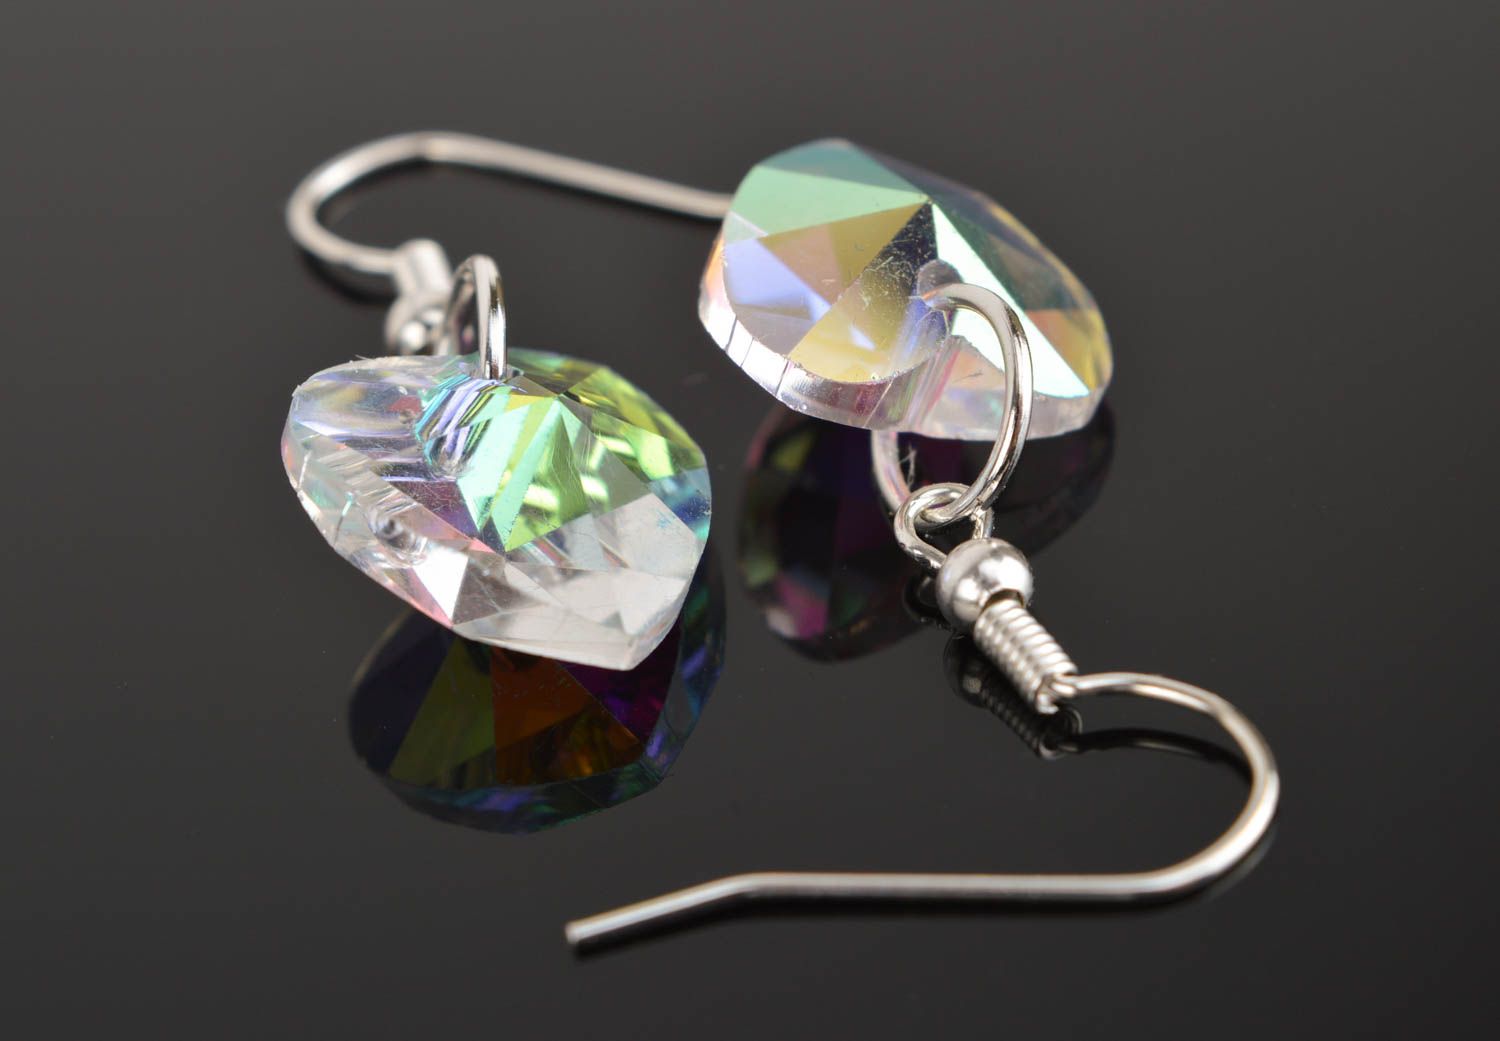 Handmade earrings designer jewelry glass earrings unusual accessory gift ideas photo 4